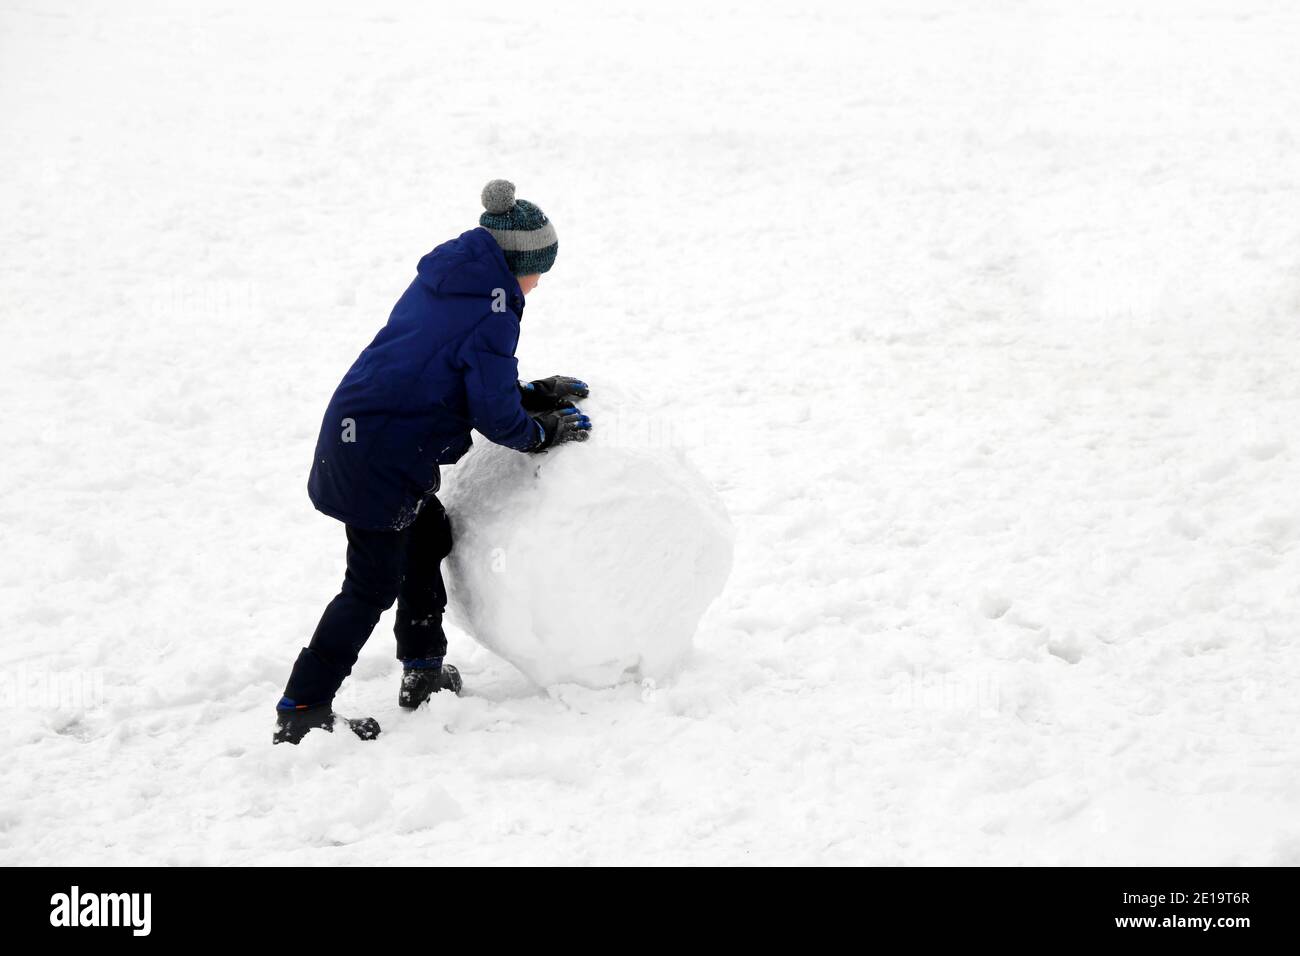 Un enfant roule une boule de neige dans une rue. Loisirs d'hiver, un garçon faisant un bonhomme de neige Banque D'Images